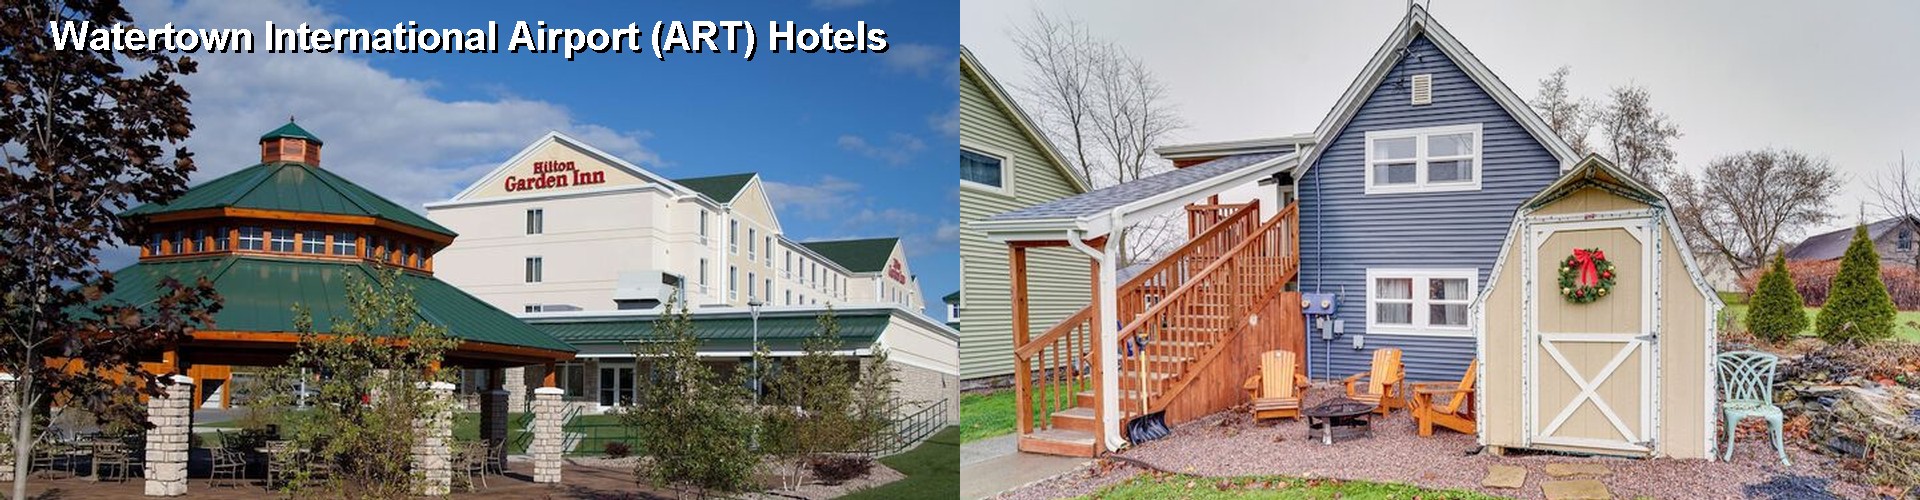 5 Best Hotels near Watertown International Airport (ART)